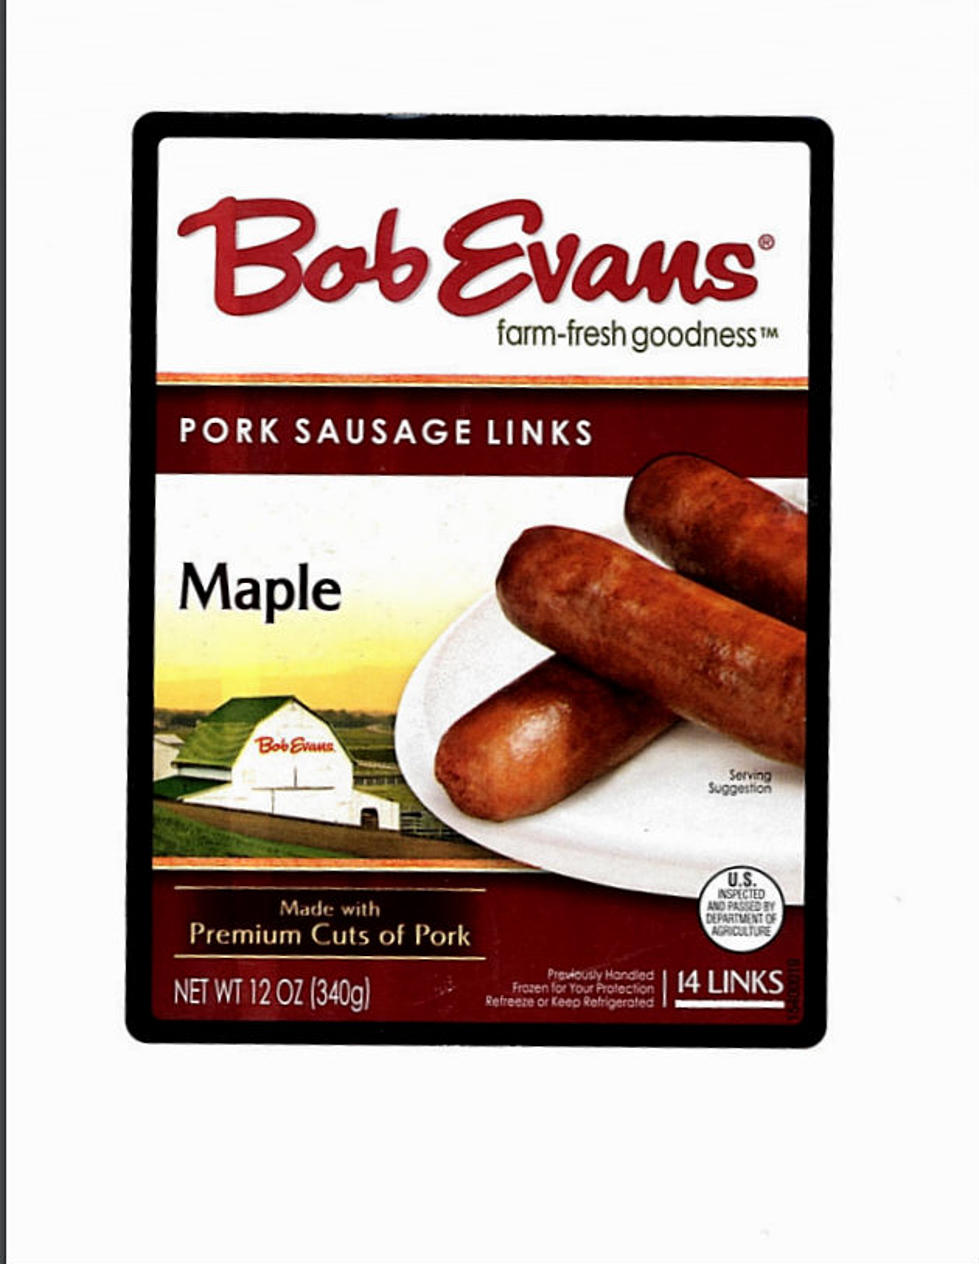 Bob Evans Sausage Being Recalled